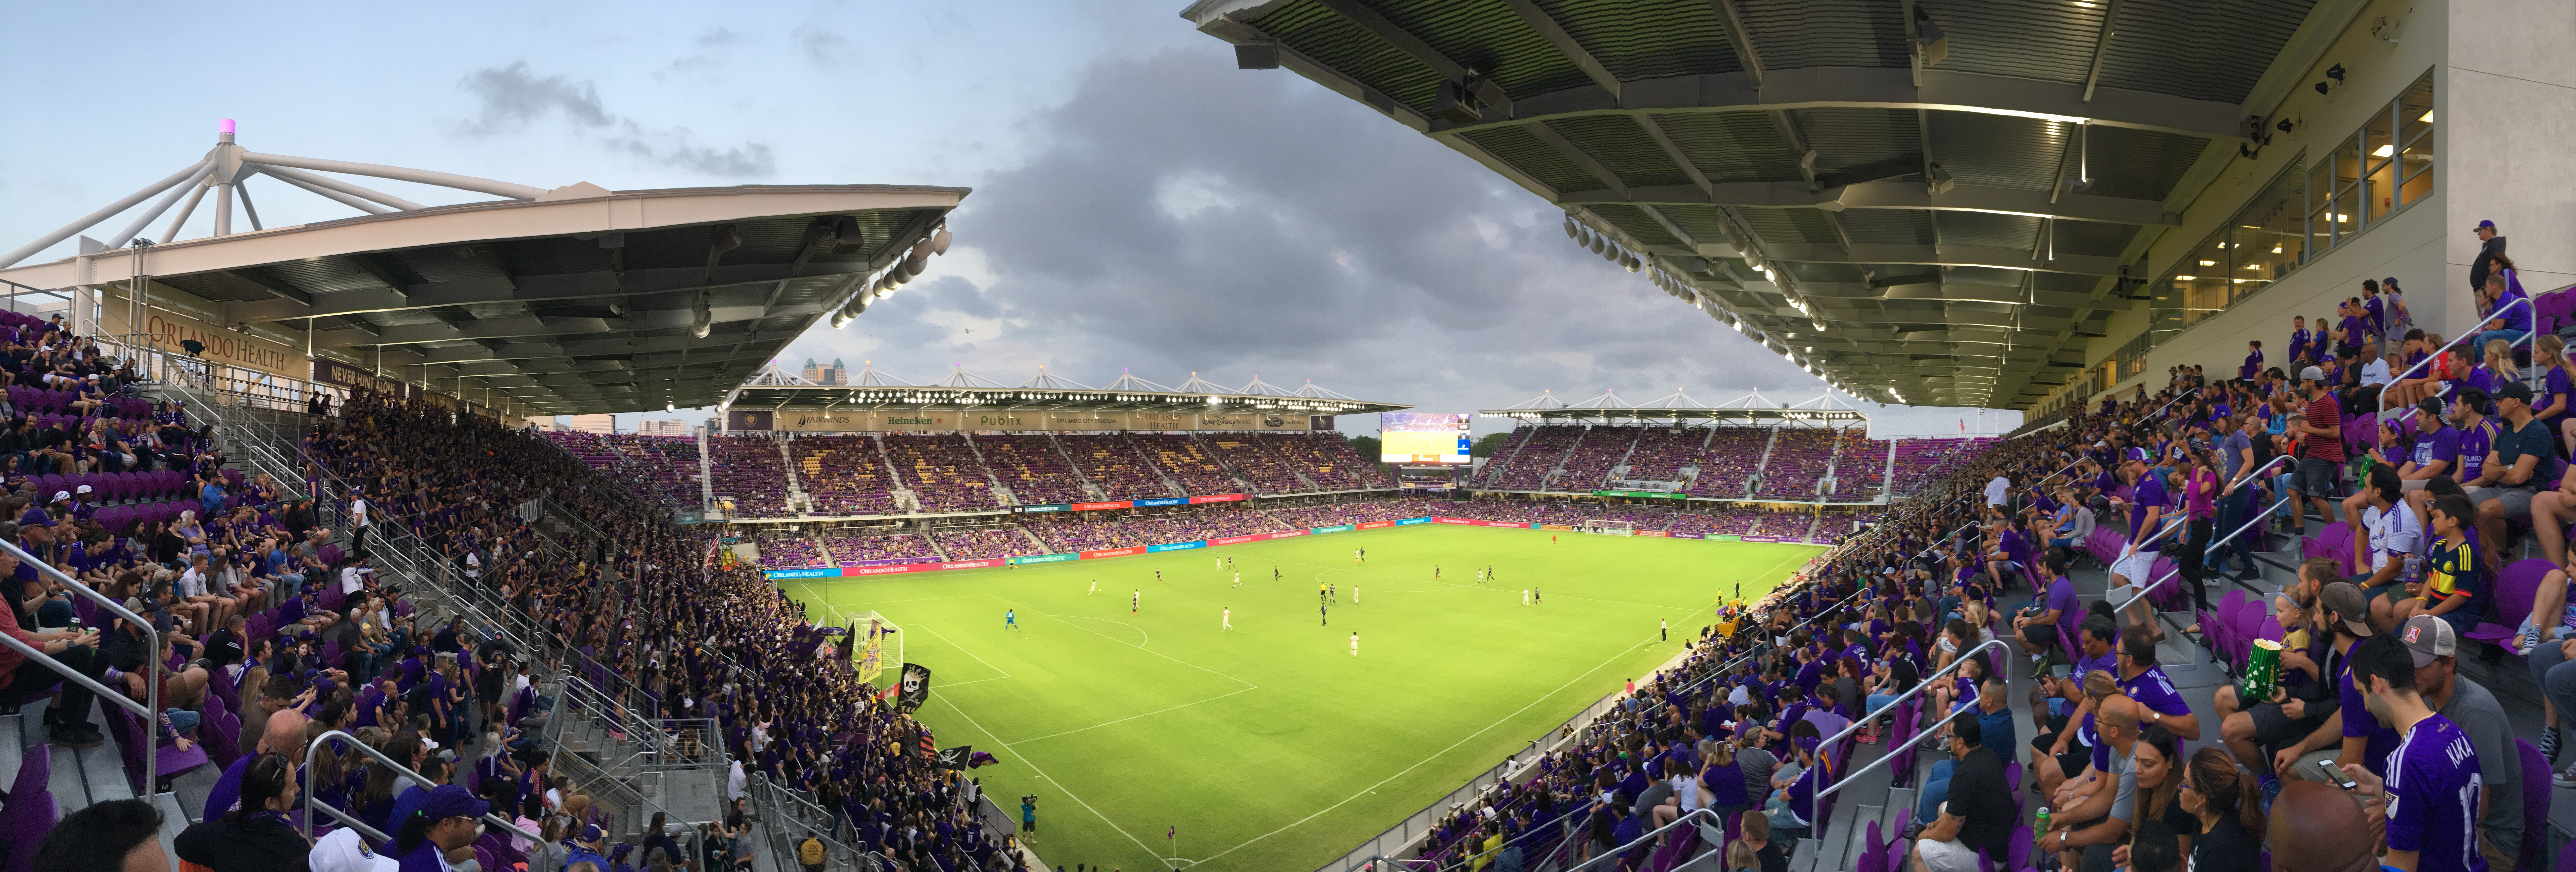 Como é um jogo de futebol em Orlando? ⚽️👇🏼 O estádio do Orlando City